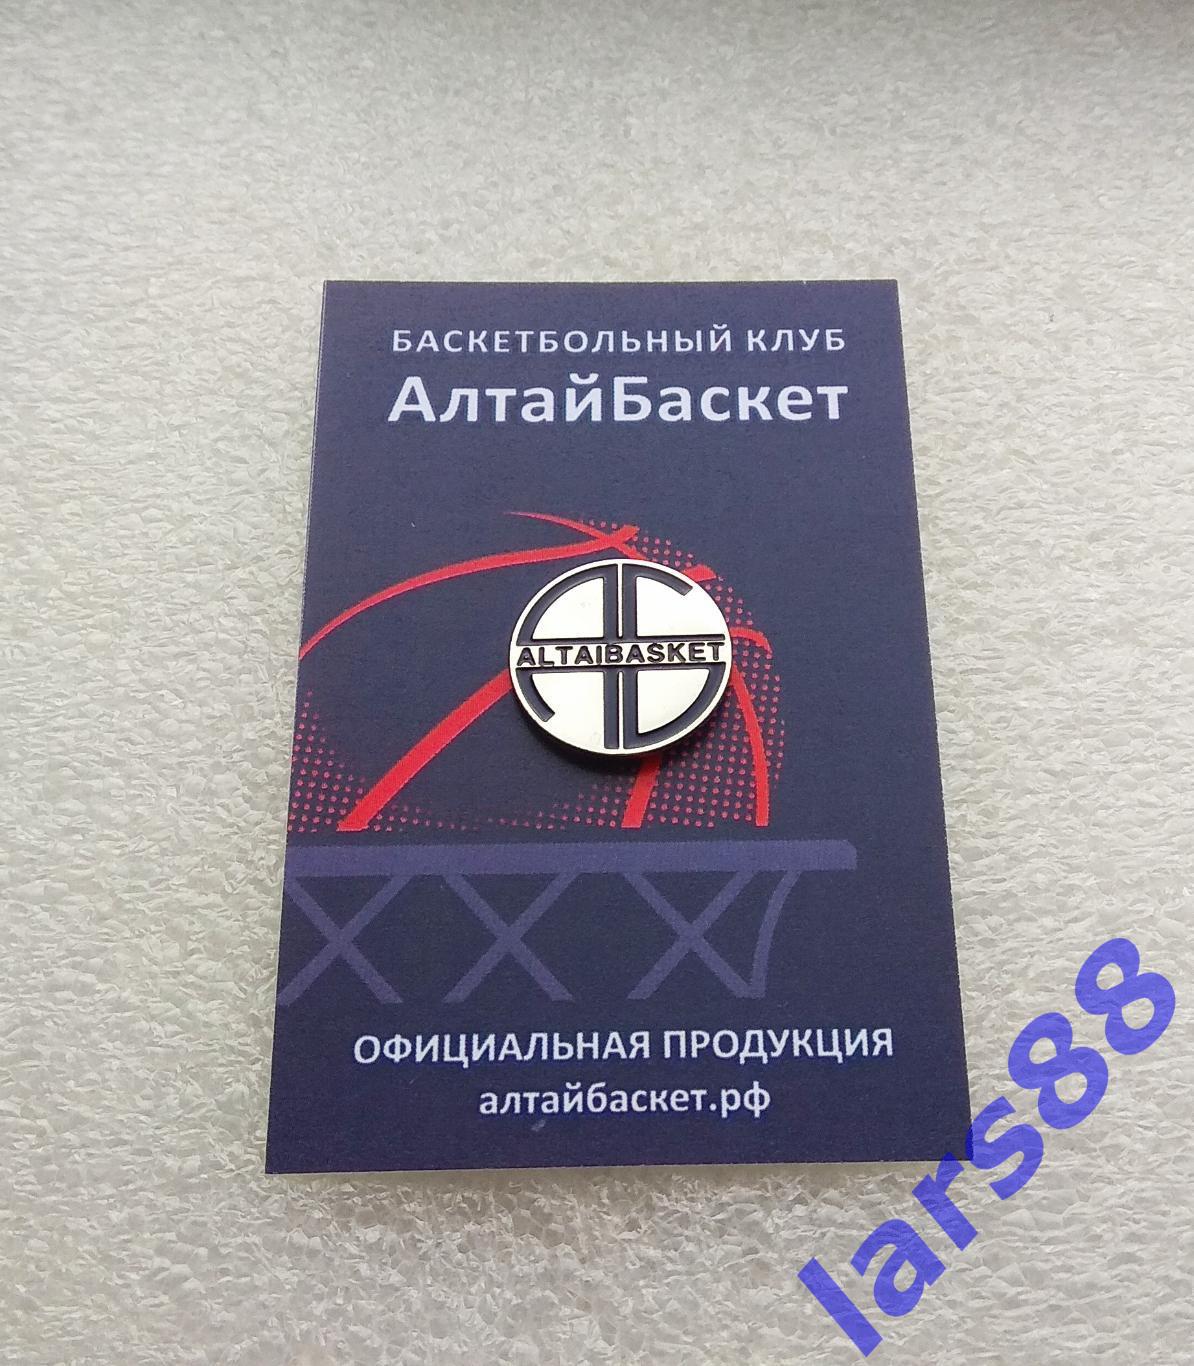 Значок БК АЛТАЙБАСКЕТ Барнаул (Суперлига-2) - официальное издание 2018/19.